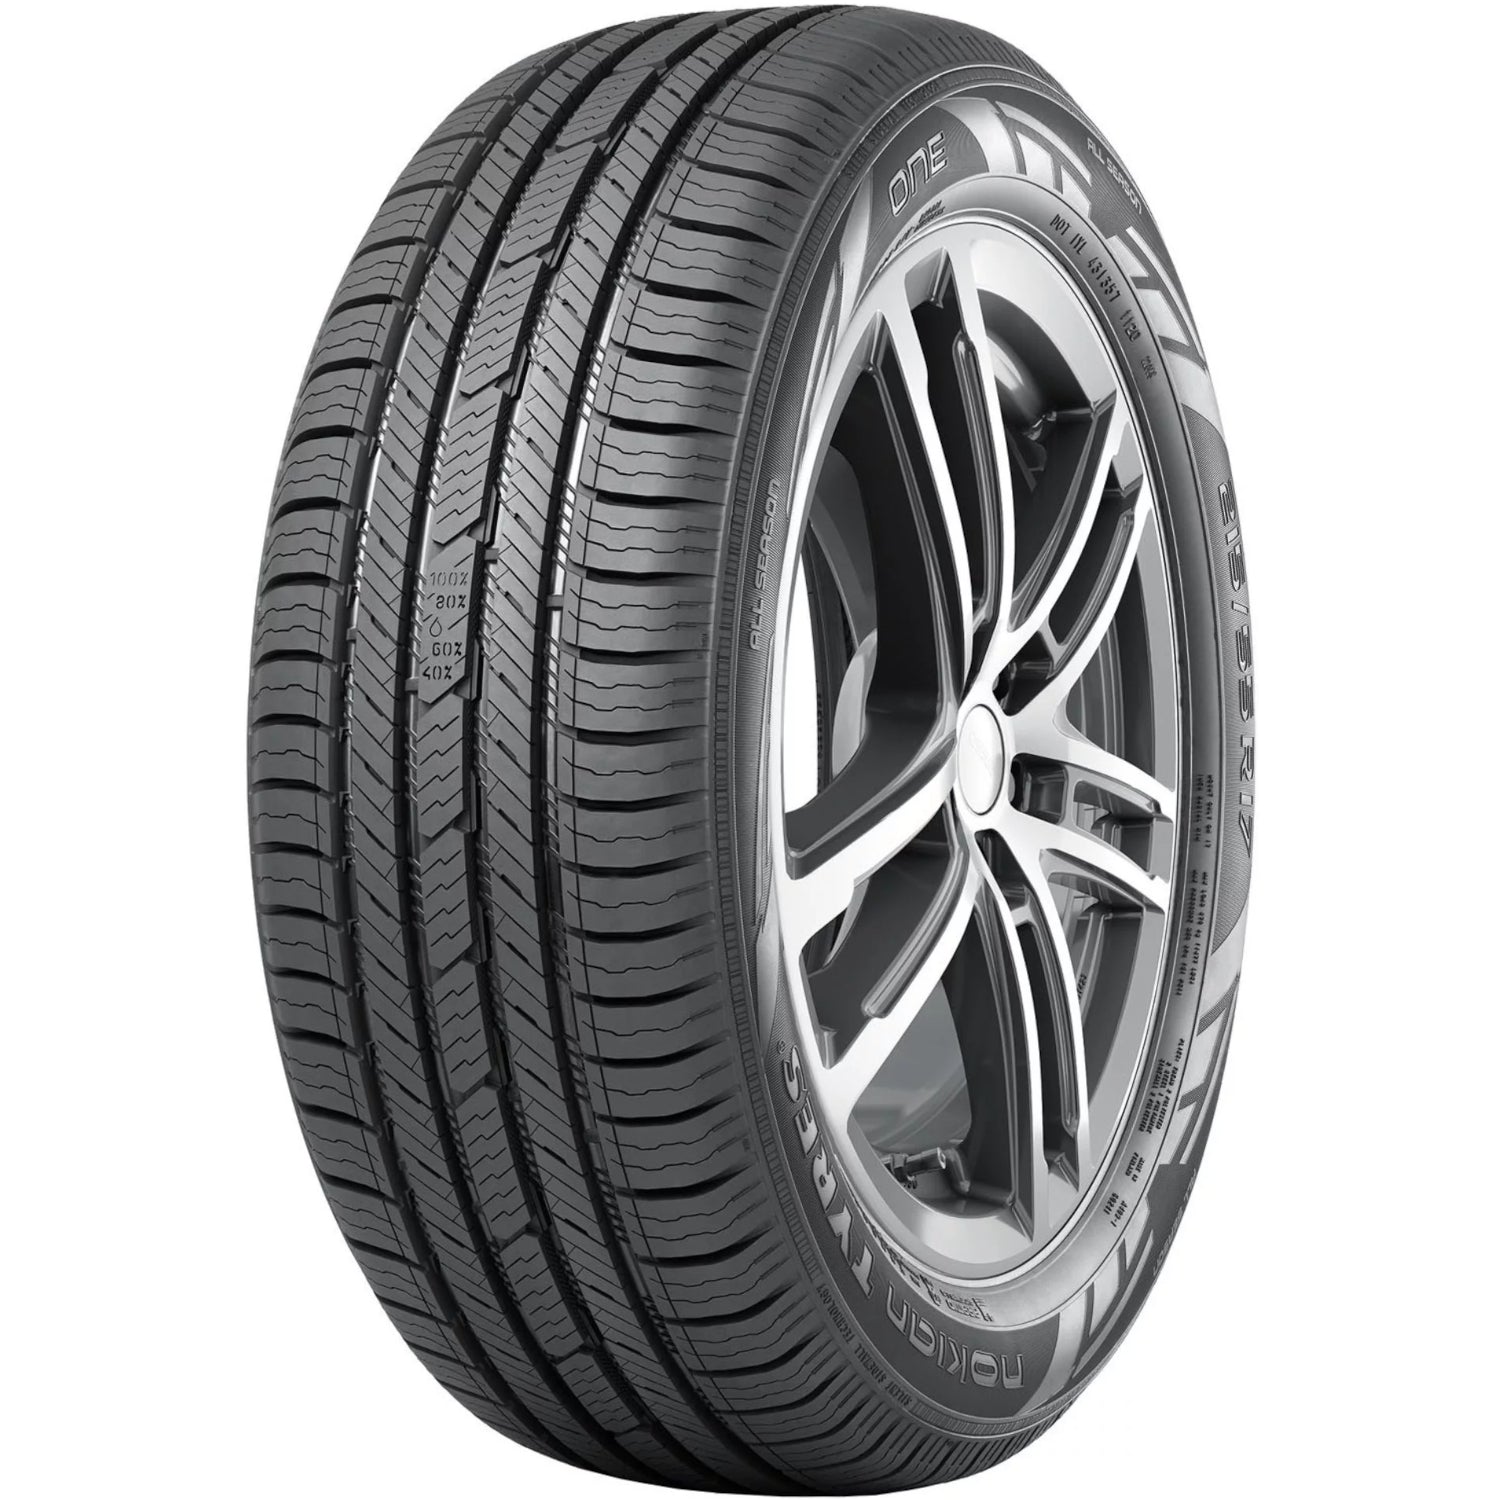 NOKIAN ONE 215/55R16XL (25.3X8.5R 16) Tires